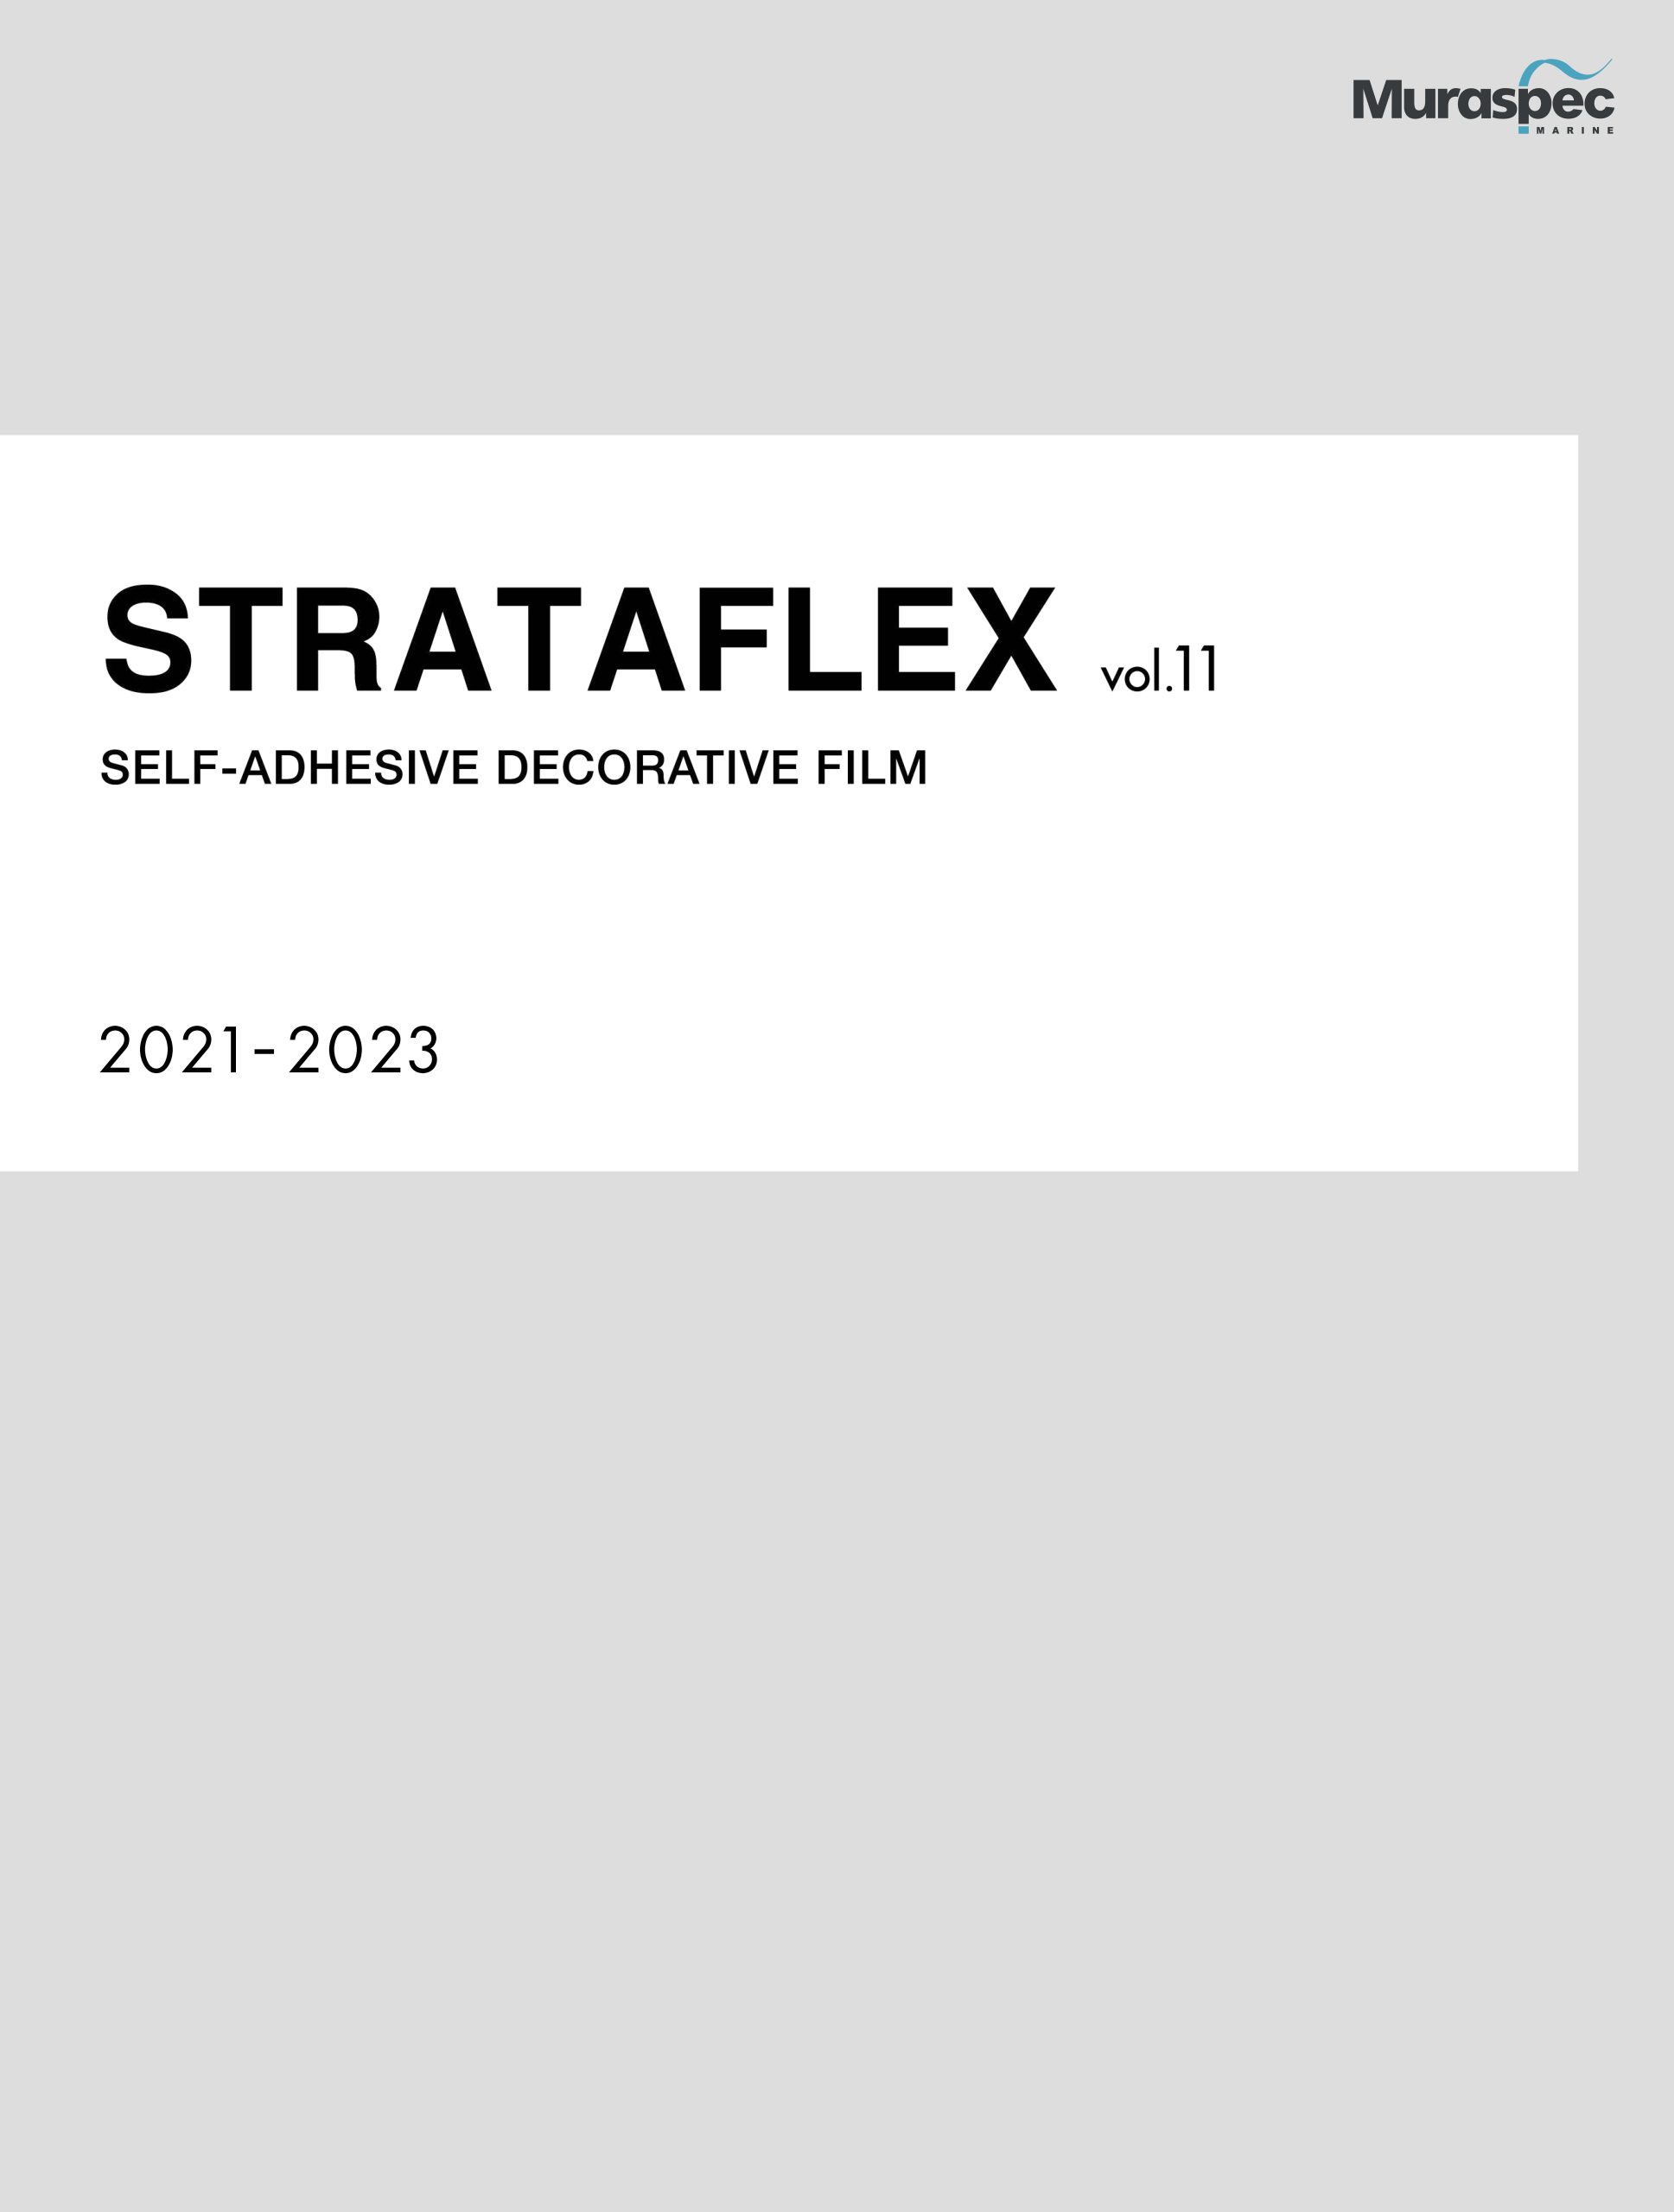 Strataflex Brochure Vol. 11 (2021-2023)